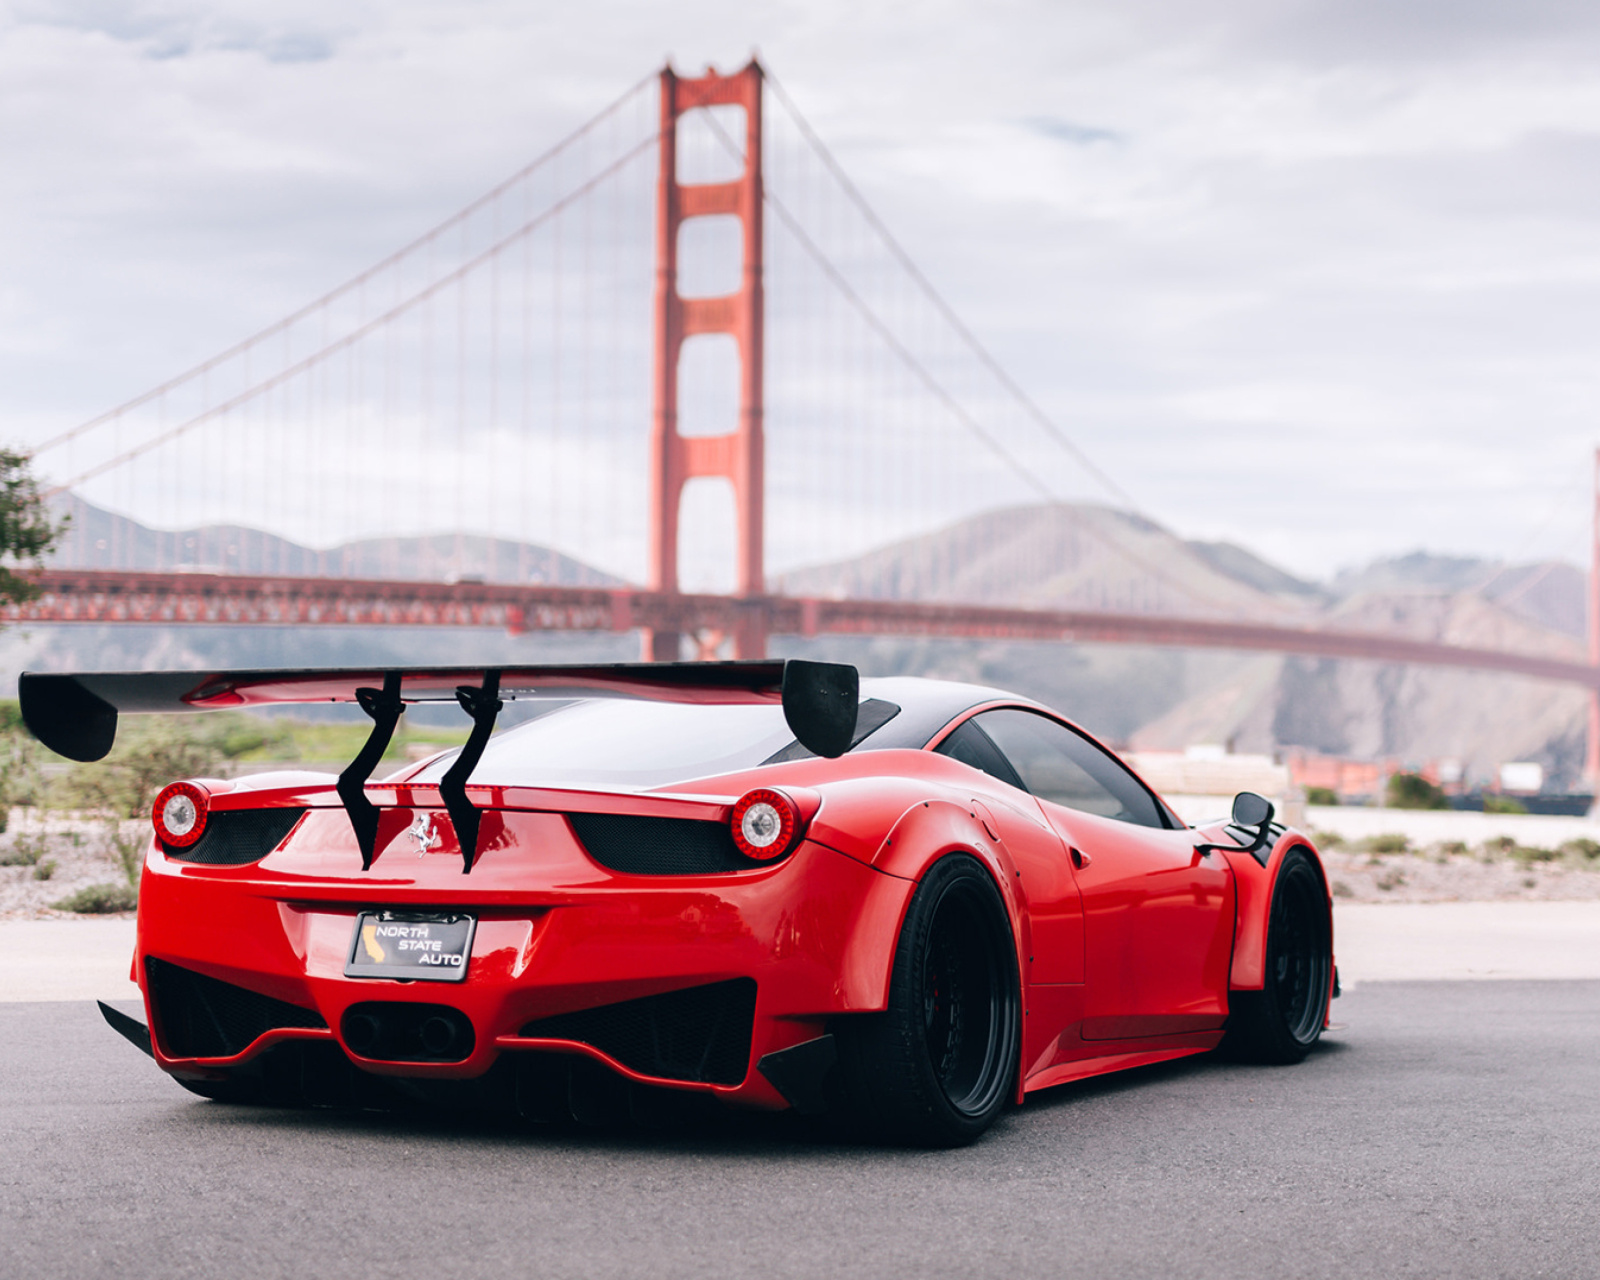 Das Ferrari 458 Italia near Golden Gate Bridge Wallpaper 1600x1280